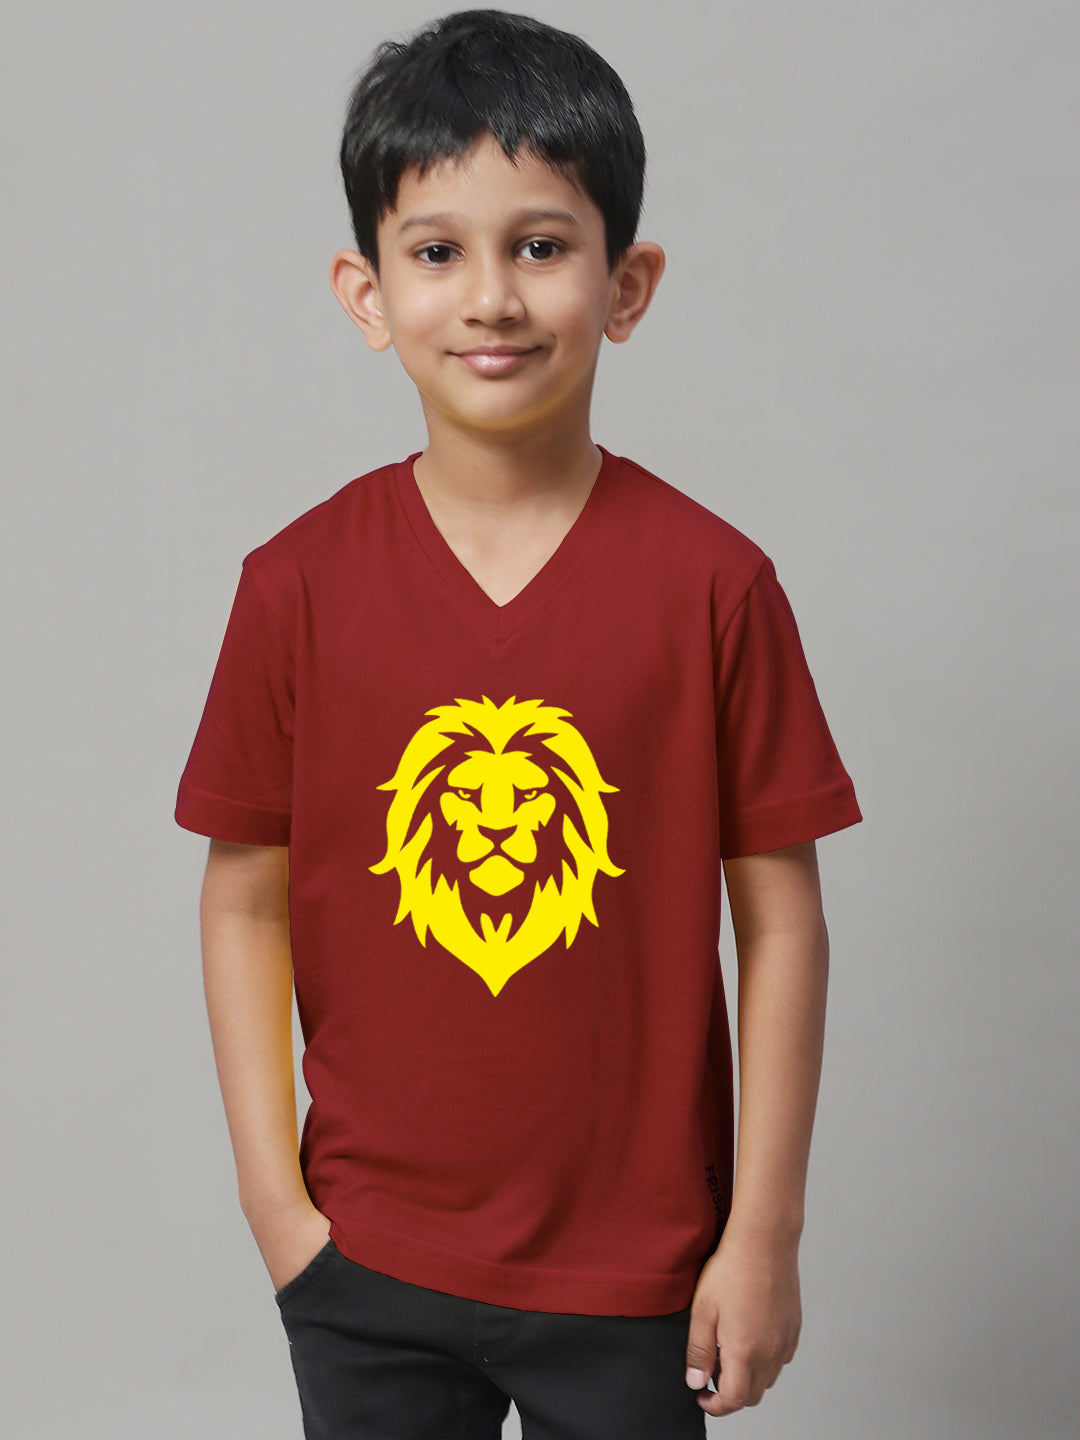 Boys Lion Half Sleeves Printed T-Shirt